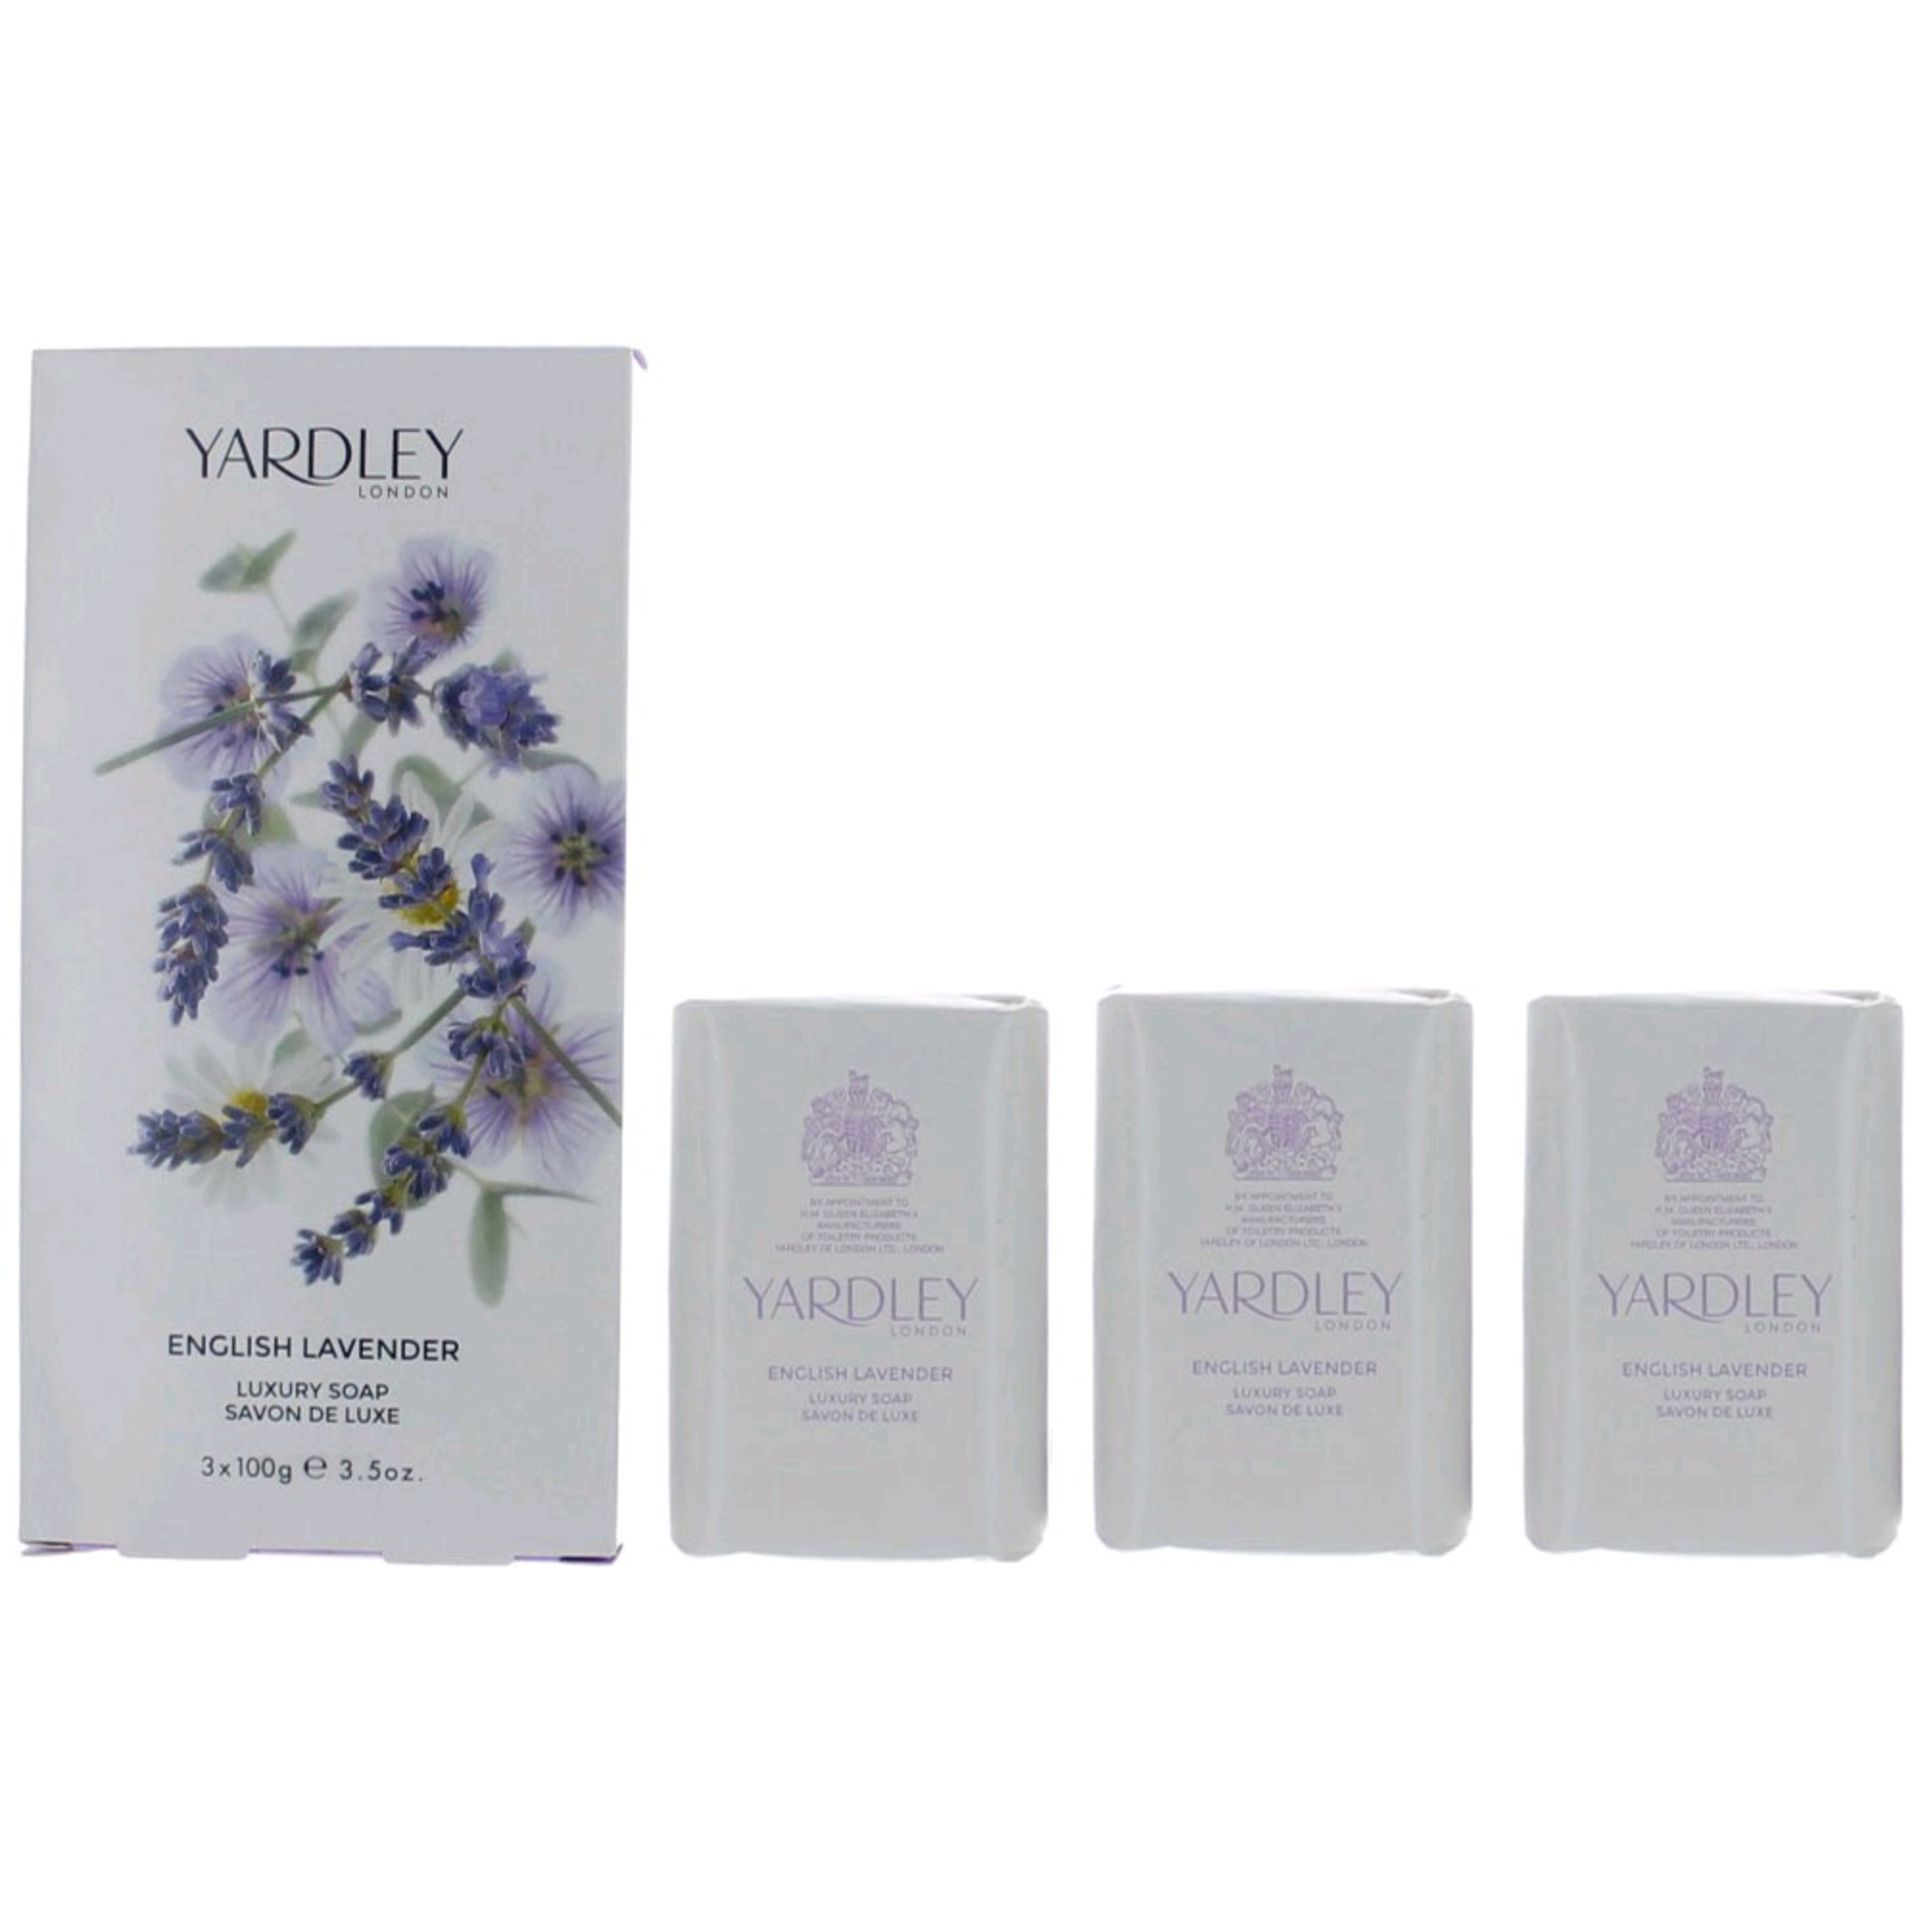 V Brand New Yardley English Lavender Soap 100G X 3